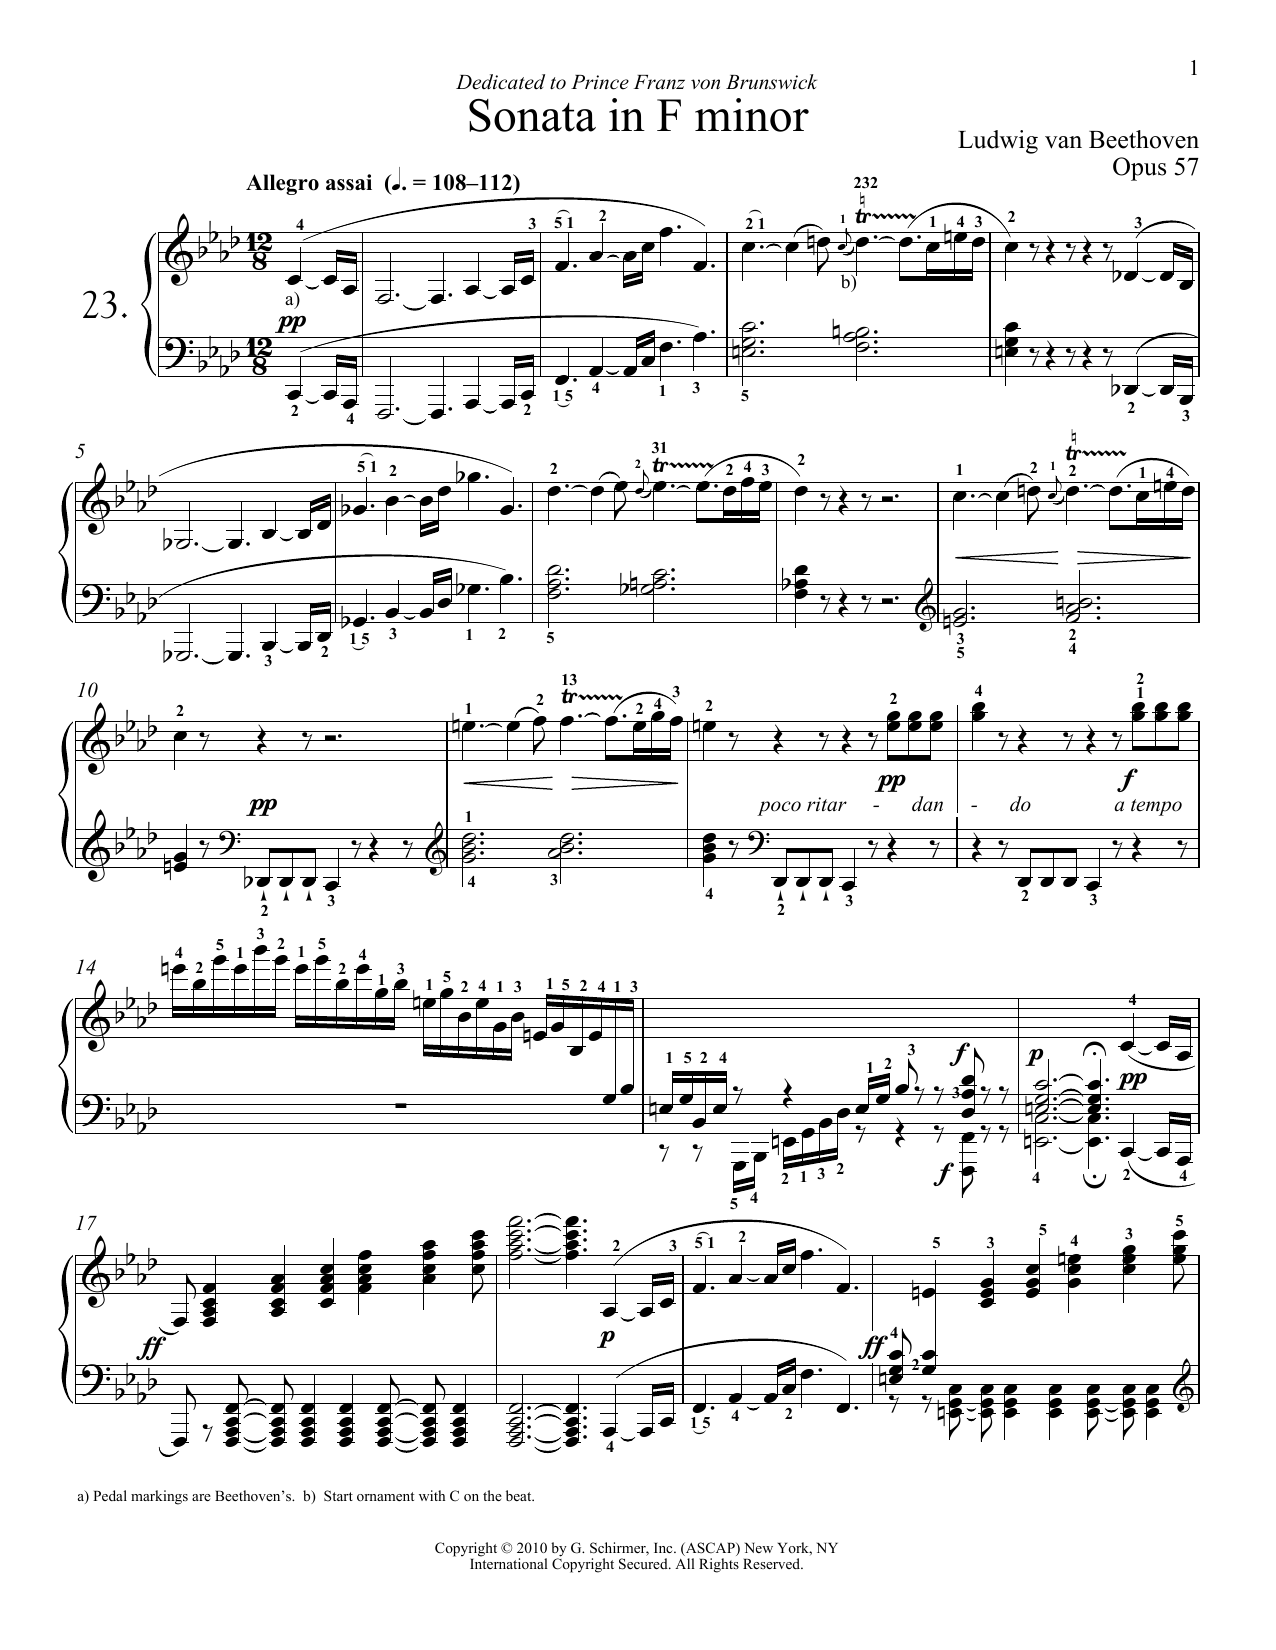 Ludwig van Beethoven Piano Sonata No. 23 In F minor, Op. 57 